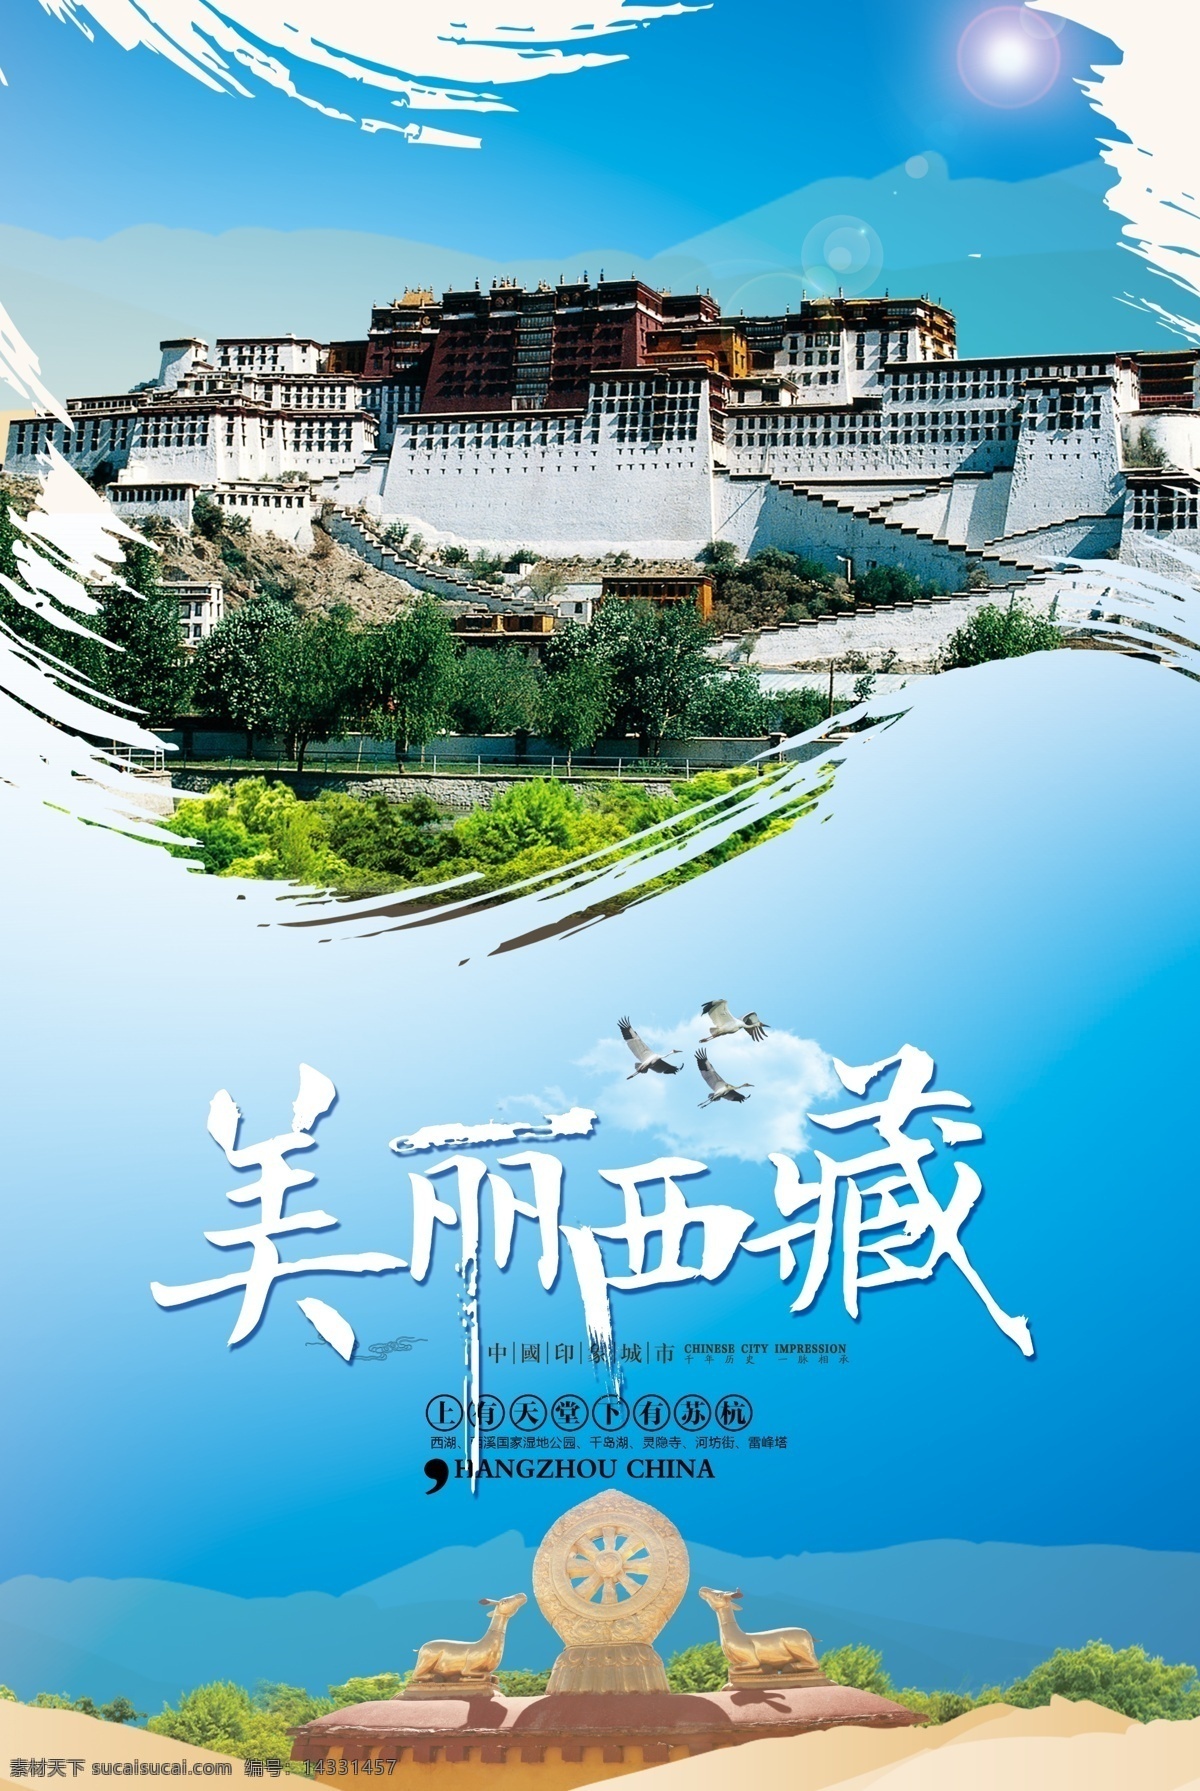 西藏旅游 西藏 印象 海报 简约 宣传海报 提供 精美好看 免费模版